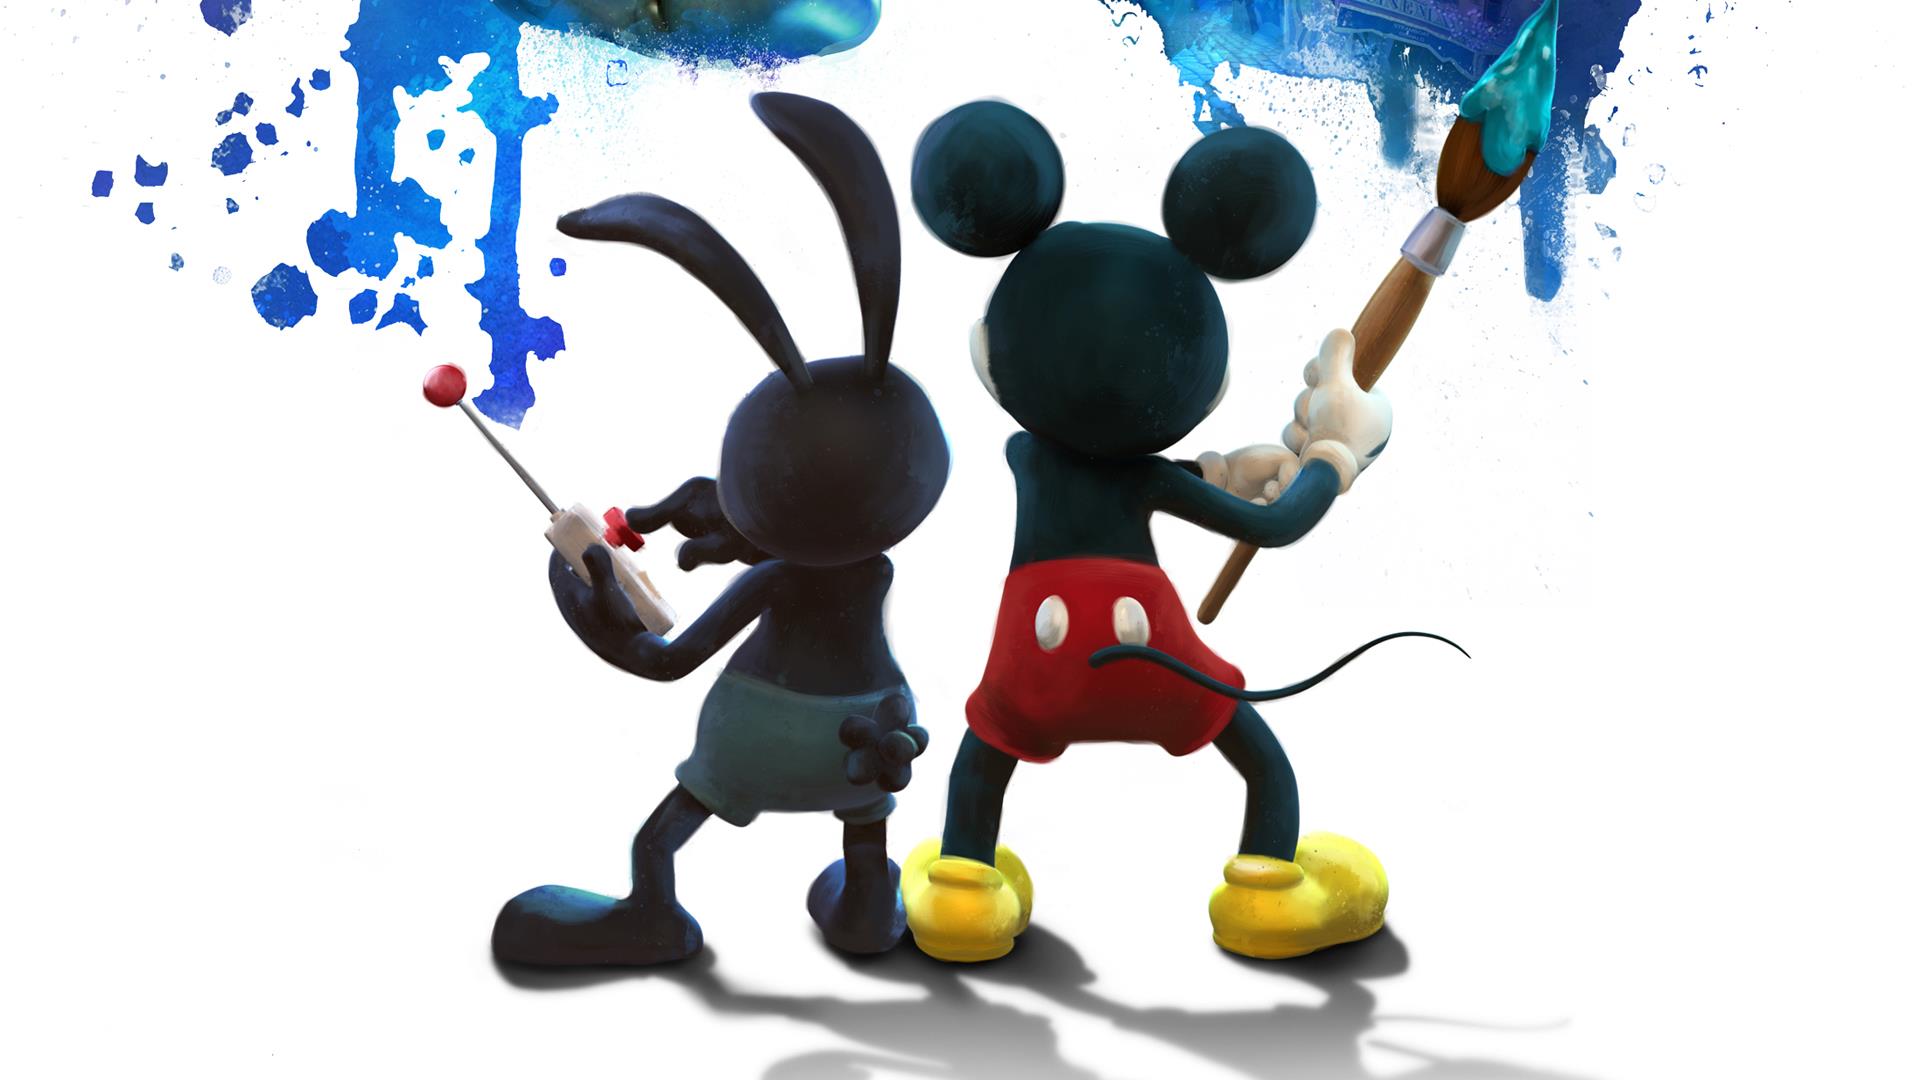 Los mejores fondos de pantalla de Epic Mickey 2: The Power Of Two para la pantalla del teléfono